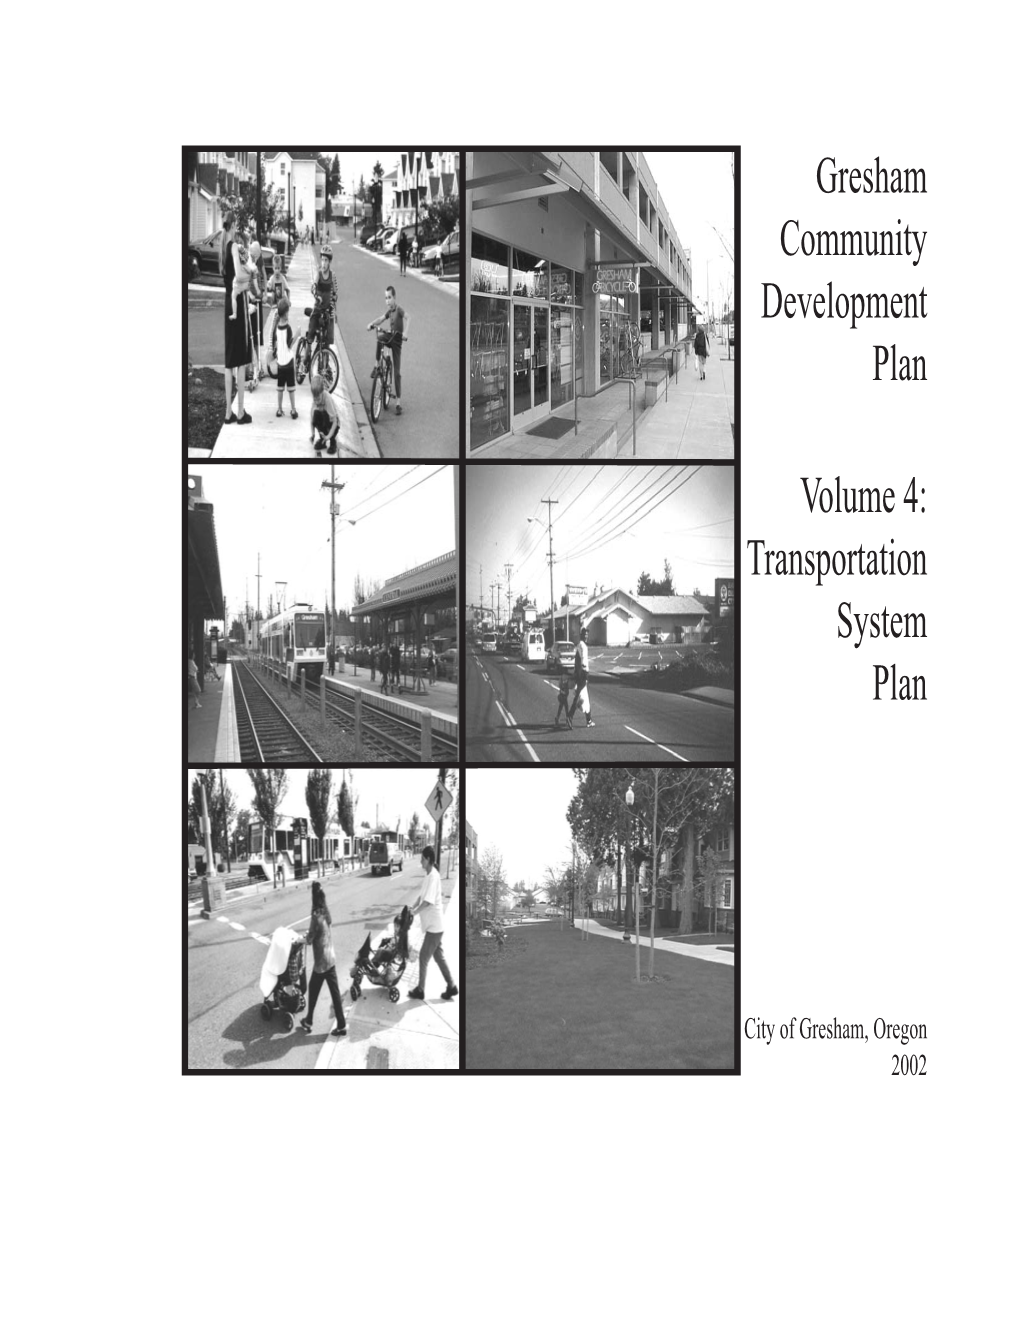 Gresham Community Development Plan Volume 4: Transportation